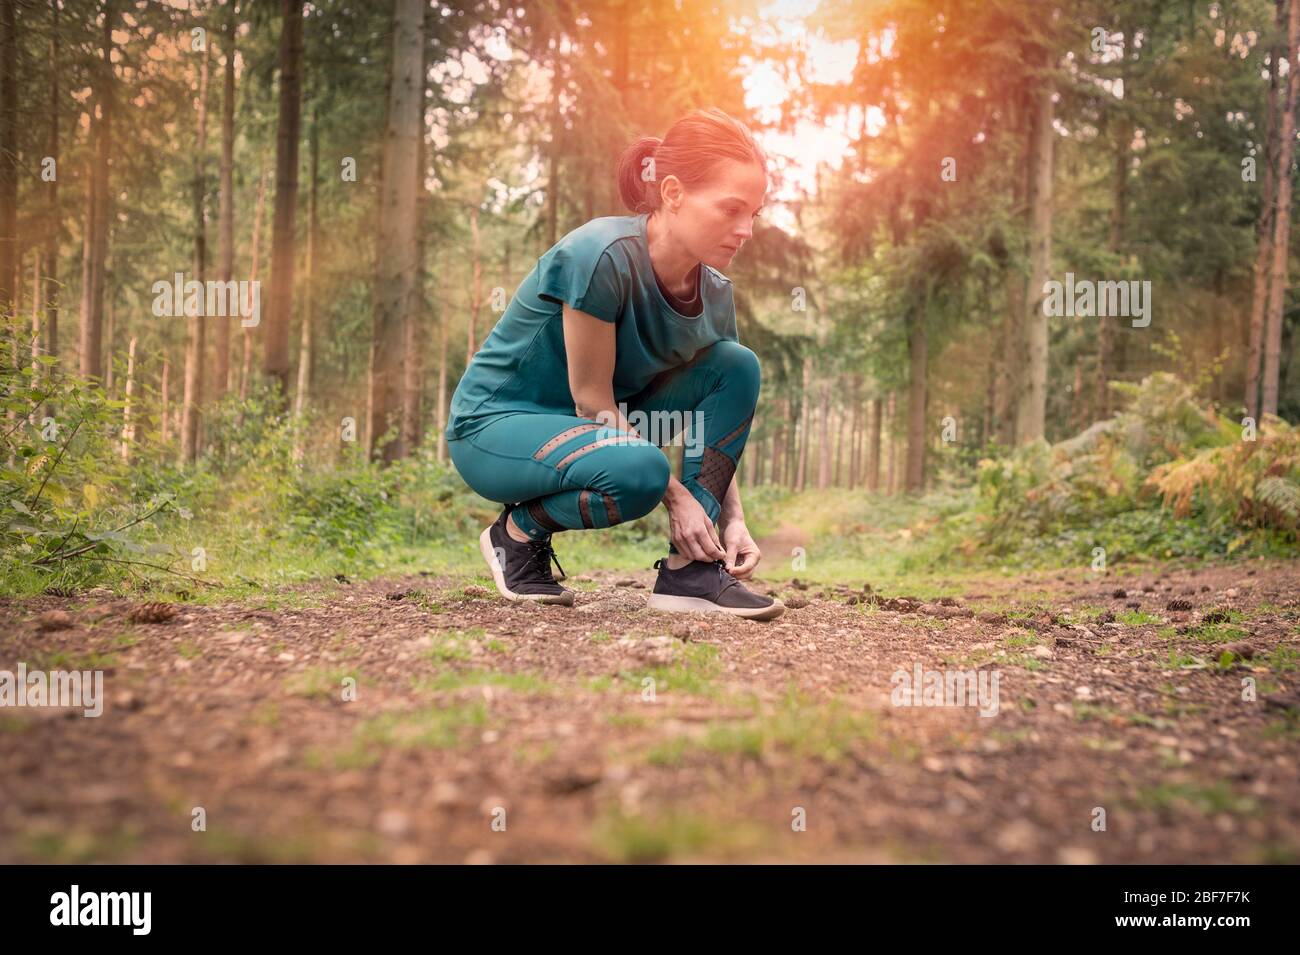 Frau Läufer tun ihre Schnürsenkel bis, im Freien im Wald. Stockfoto